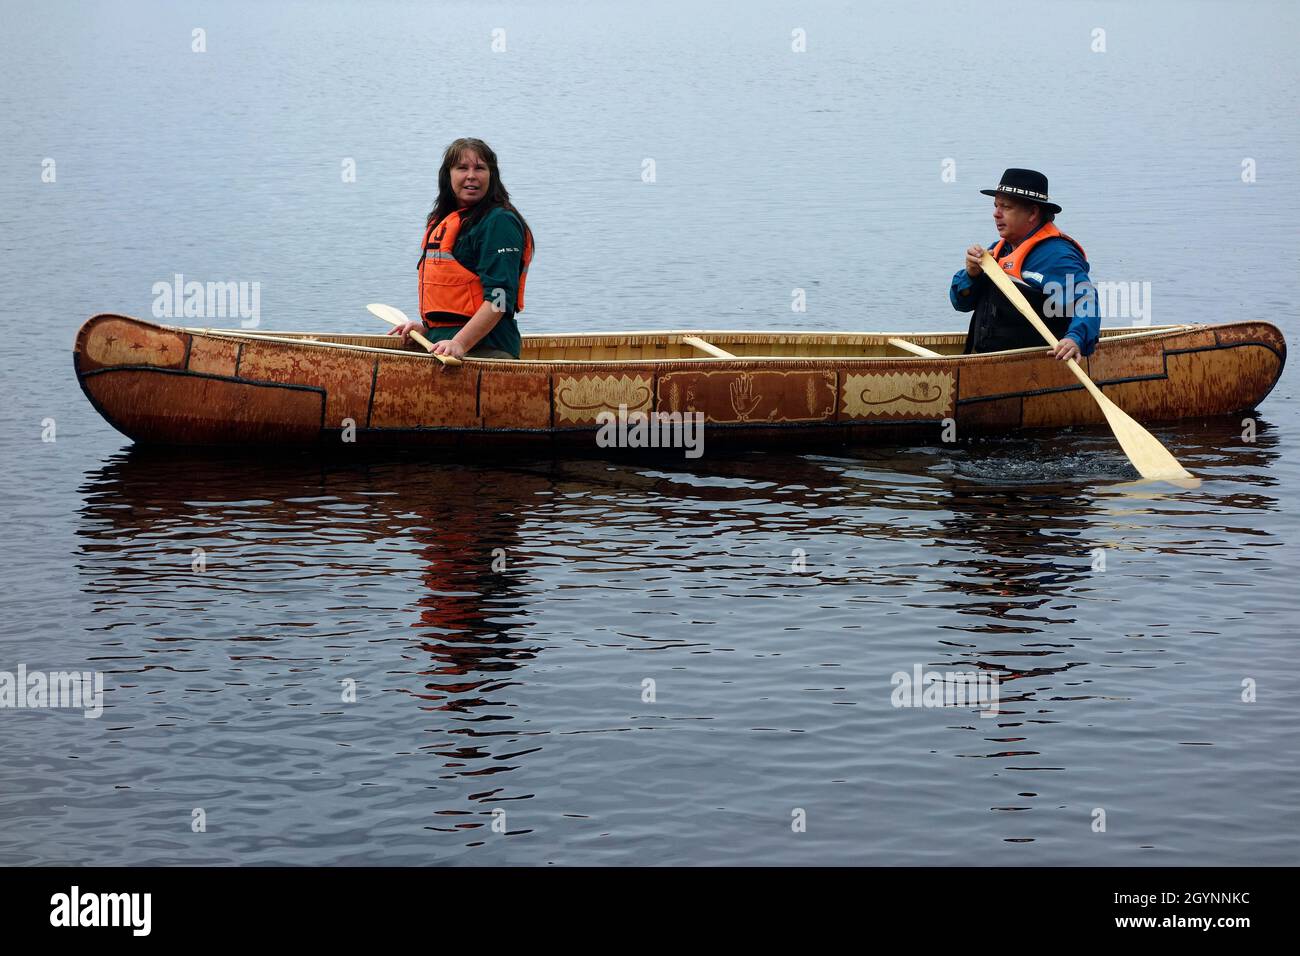 El constructor de canoas Todd Labrador y su esposa en el taller de canoas de corteza de abedul en el Parque Nacional Kejimkujik, Nueva Escocia, Canadá Foto de stock